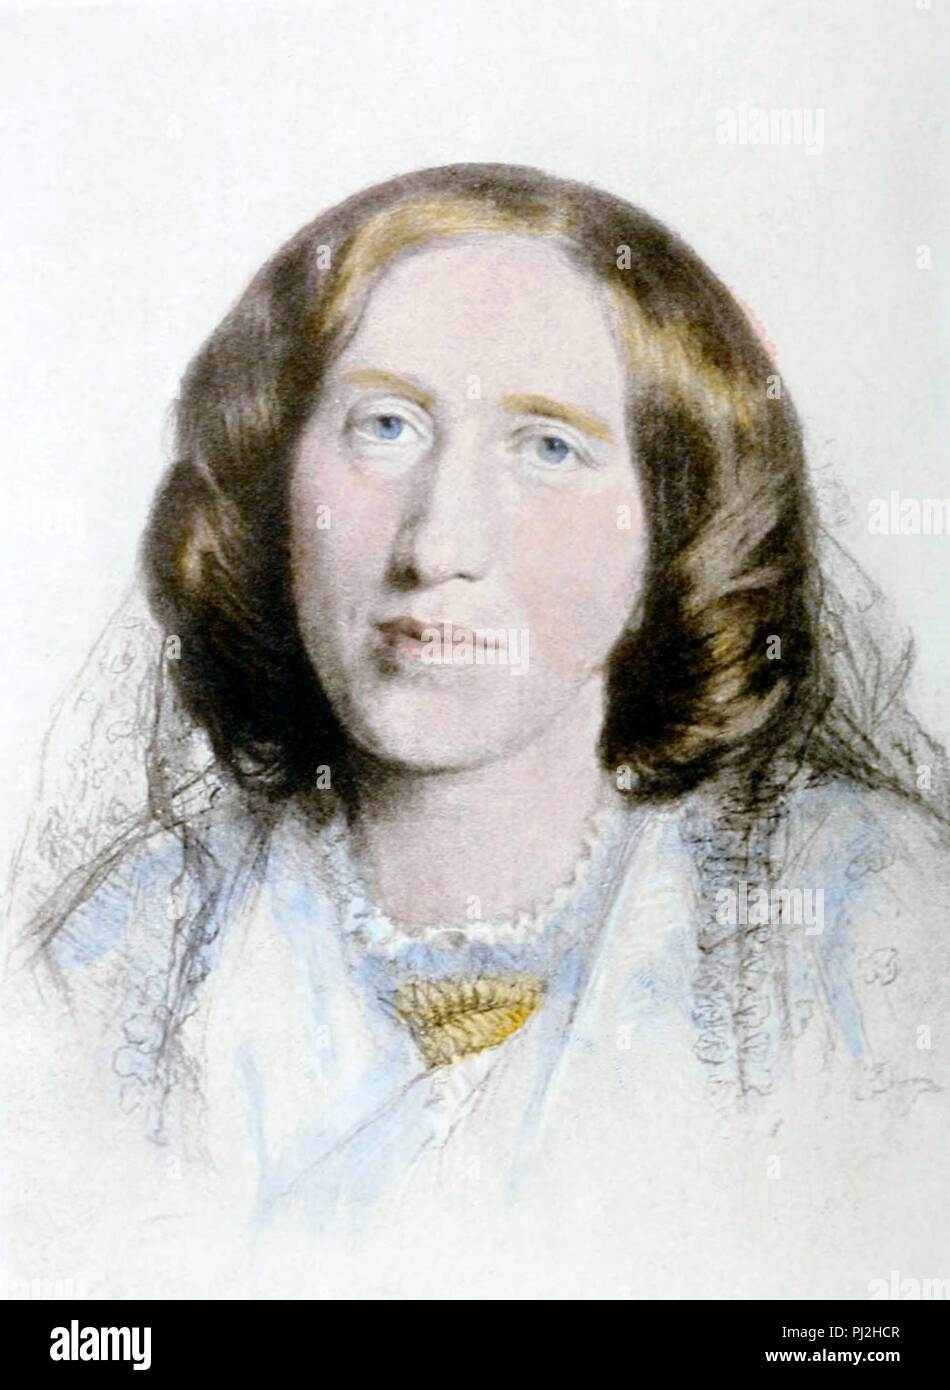 George Eliot, Mary Anne Evans (1819 - 1880), conosciuta per la sua penna nome George Eliot, romanziere inglese e poeta, uno dei più importanti scrittori dell'epoca vittoriana. Foto Stock